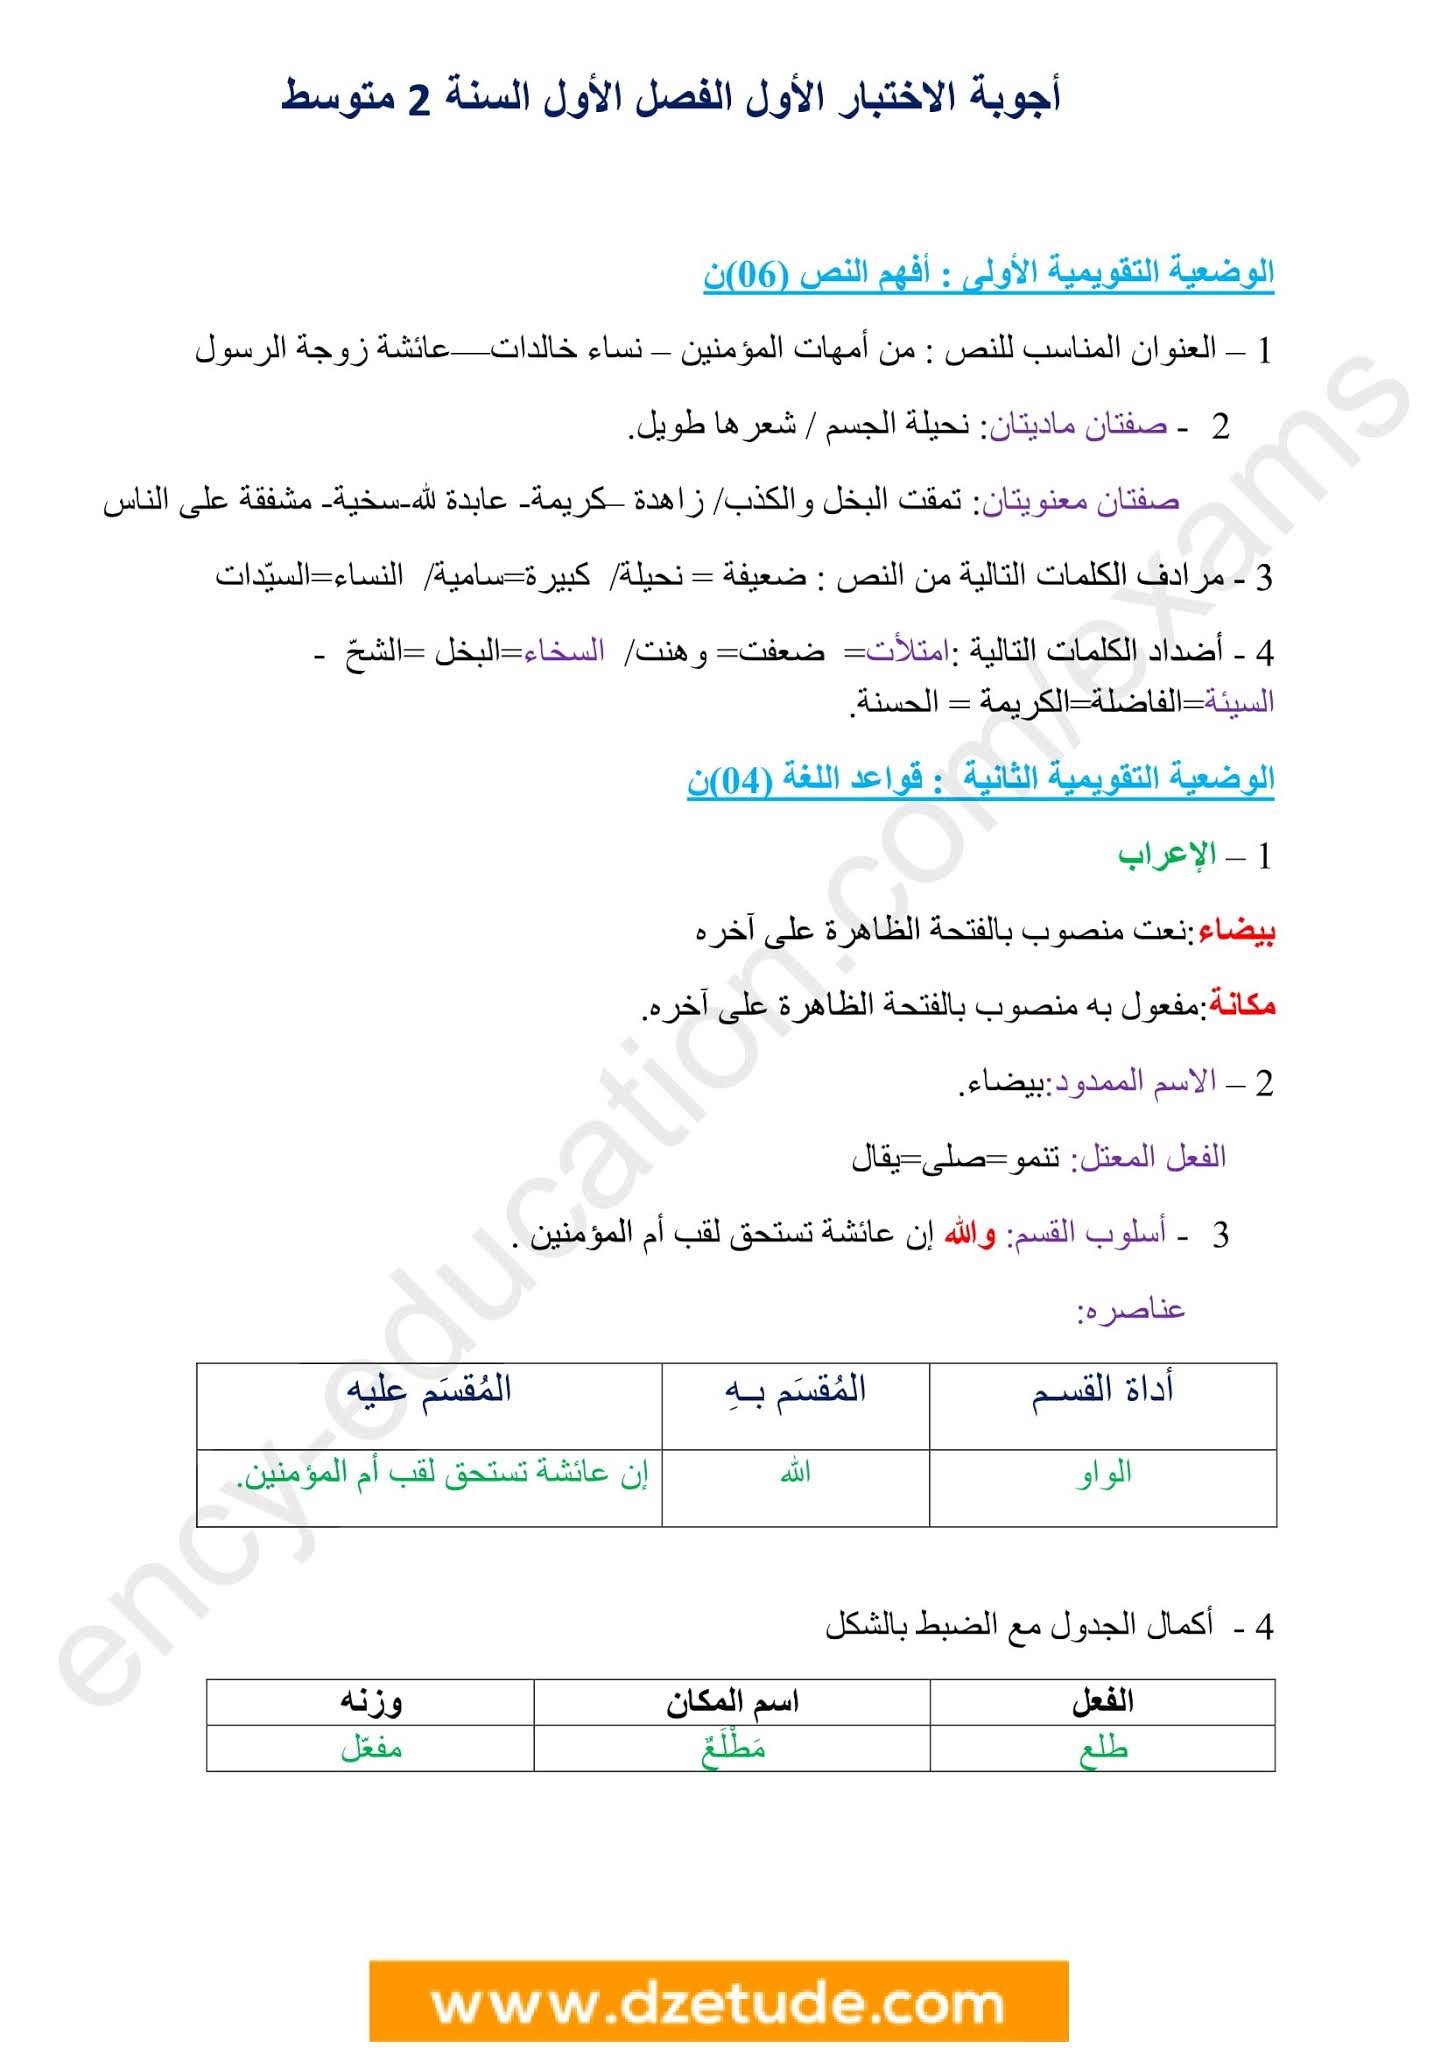 إختبار اللغة العربية الفصل الأول للسنة الثانية متوسط - الجيل الثاني نموذج 3